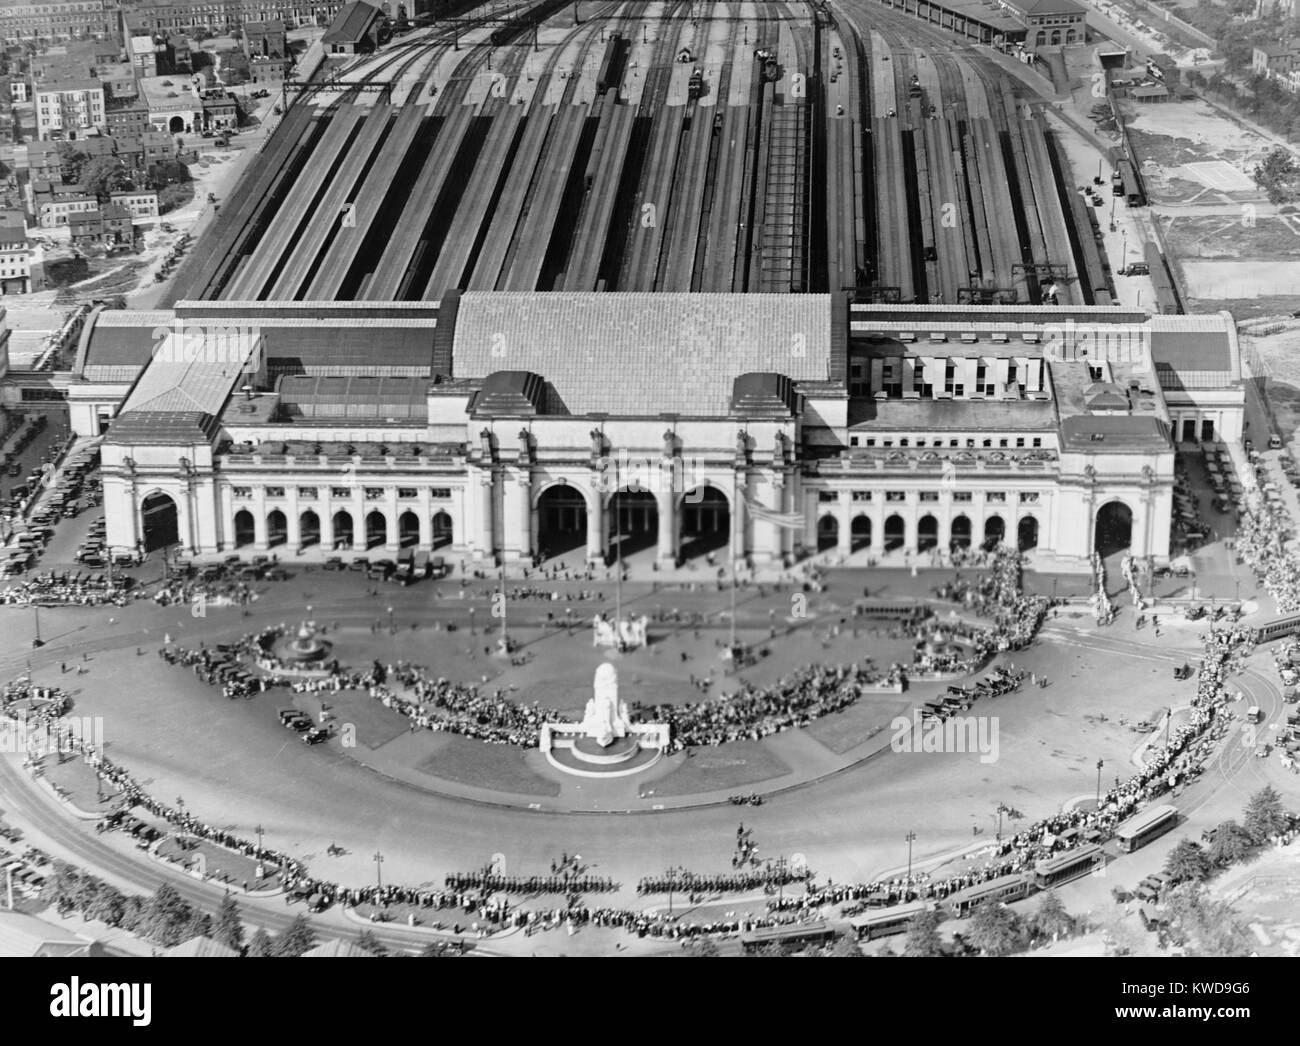 Luftbild von der Union Station in Washington, D.C., 1921-22. Das Beaux Arts Front des Gebäudes zeigt eine elegant gestaltete Halbmond Plaza. Über 20 Eisenbahnschienen Futtermittel, die in der auf der Rückseite der Station (BSLOC 2016 10 176) Stockfoto